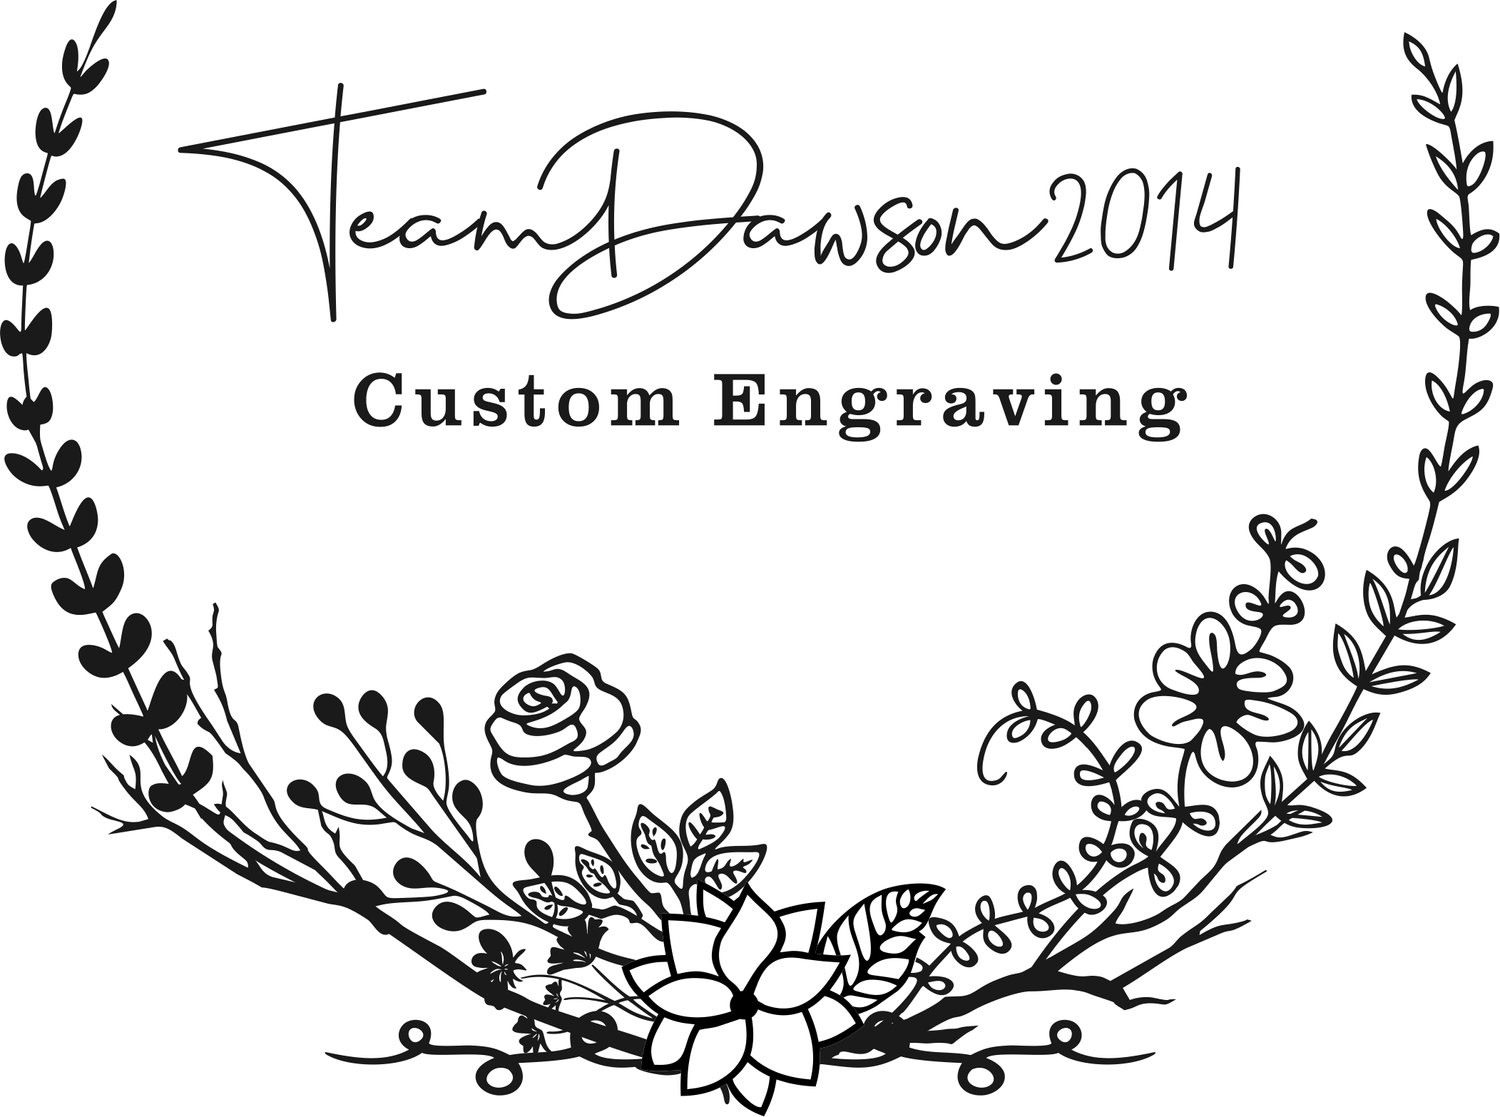 TeamDawson2014, LLC